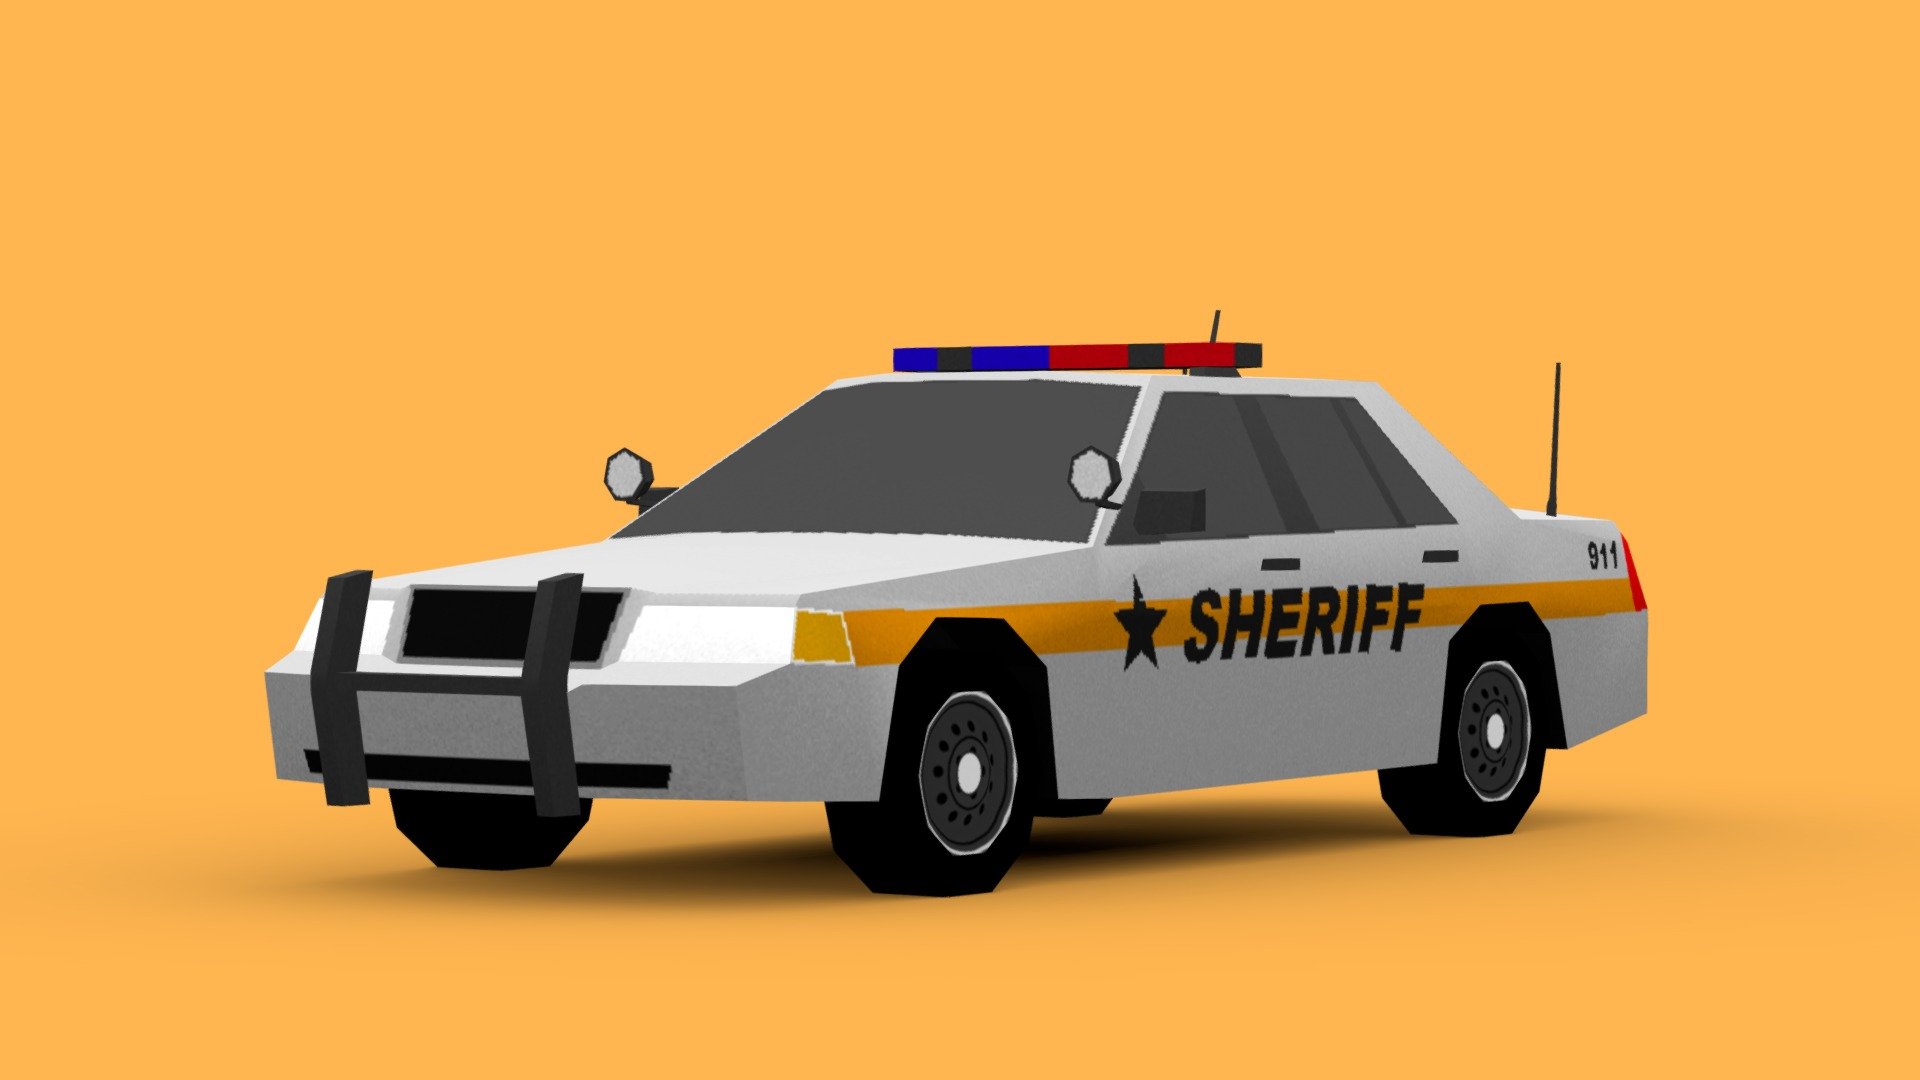 Sheriff Cruiser - Sheriff Cruiser - 3D model by Han66st 3d model